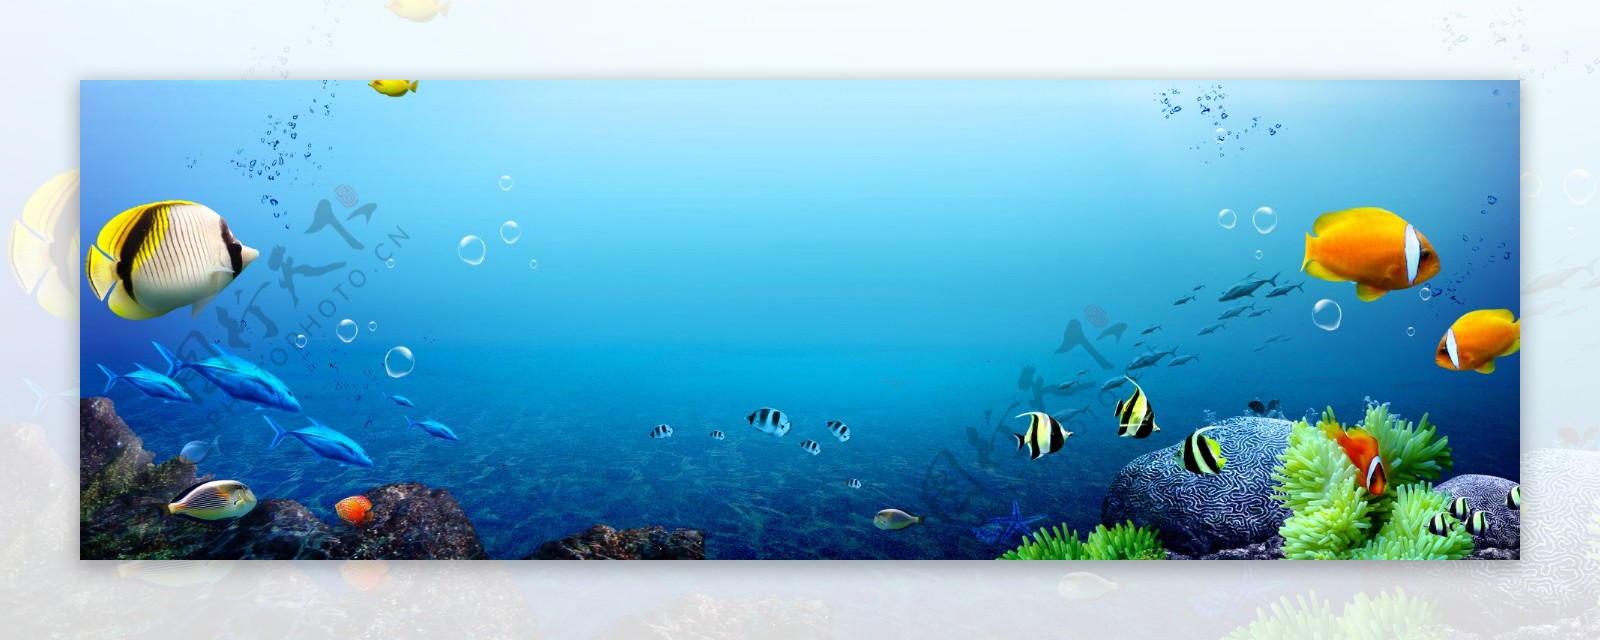 蓝色海底世界banner背景素材